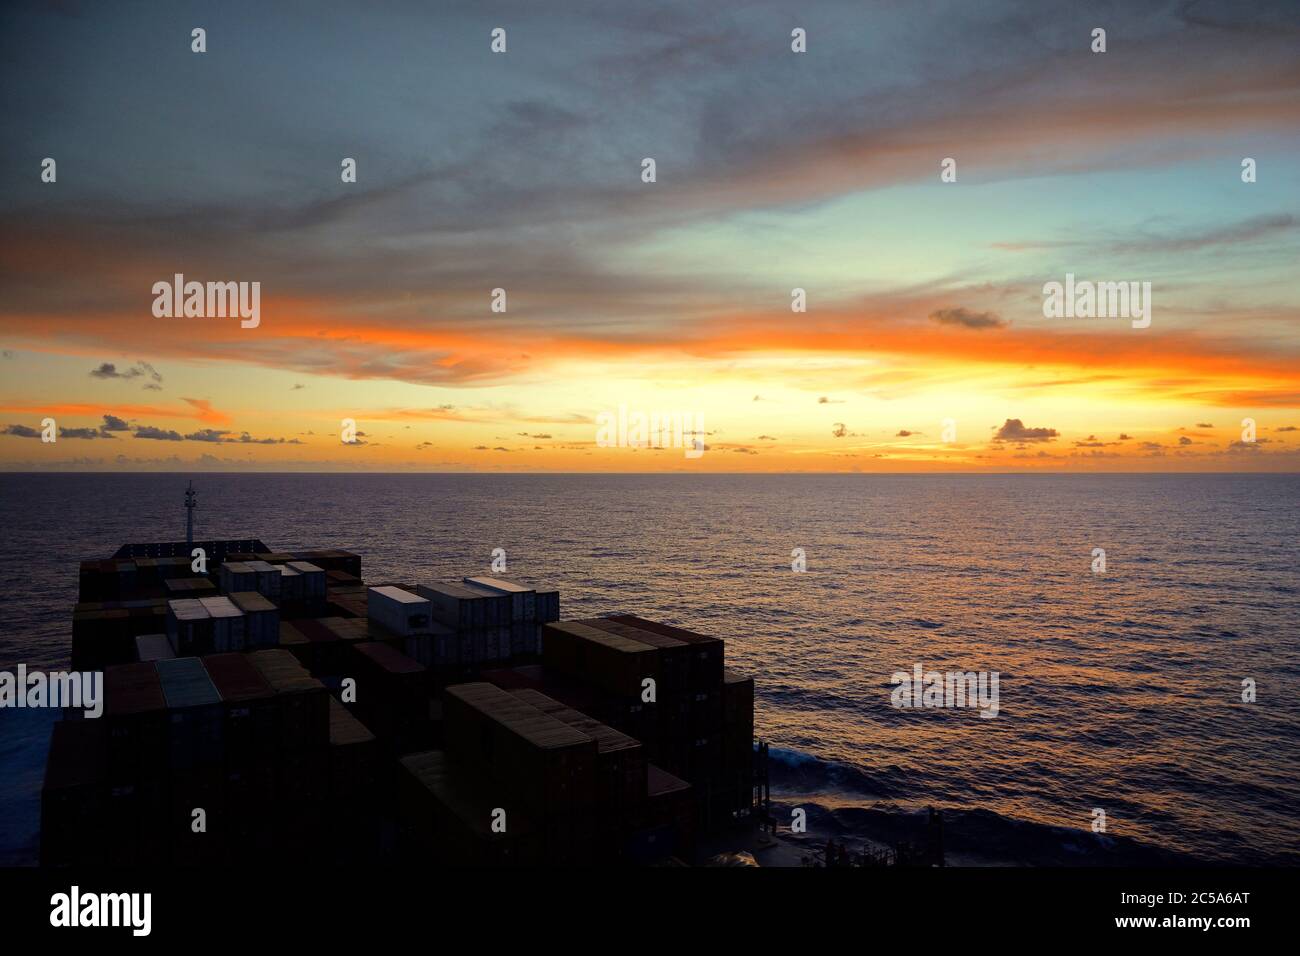 océan atlantique sud 07.49 s 034.26 w, eaux internationales - - - 16 janvier 2014 : vue sur la mer et le pont des conteneurs de l'allemagne Banque D'Images